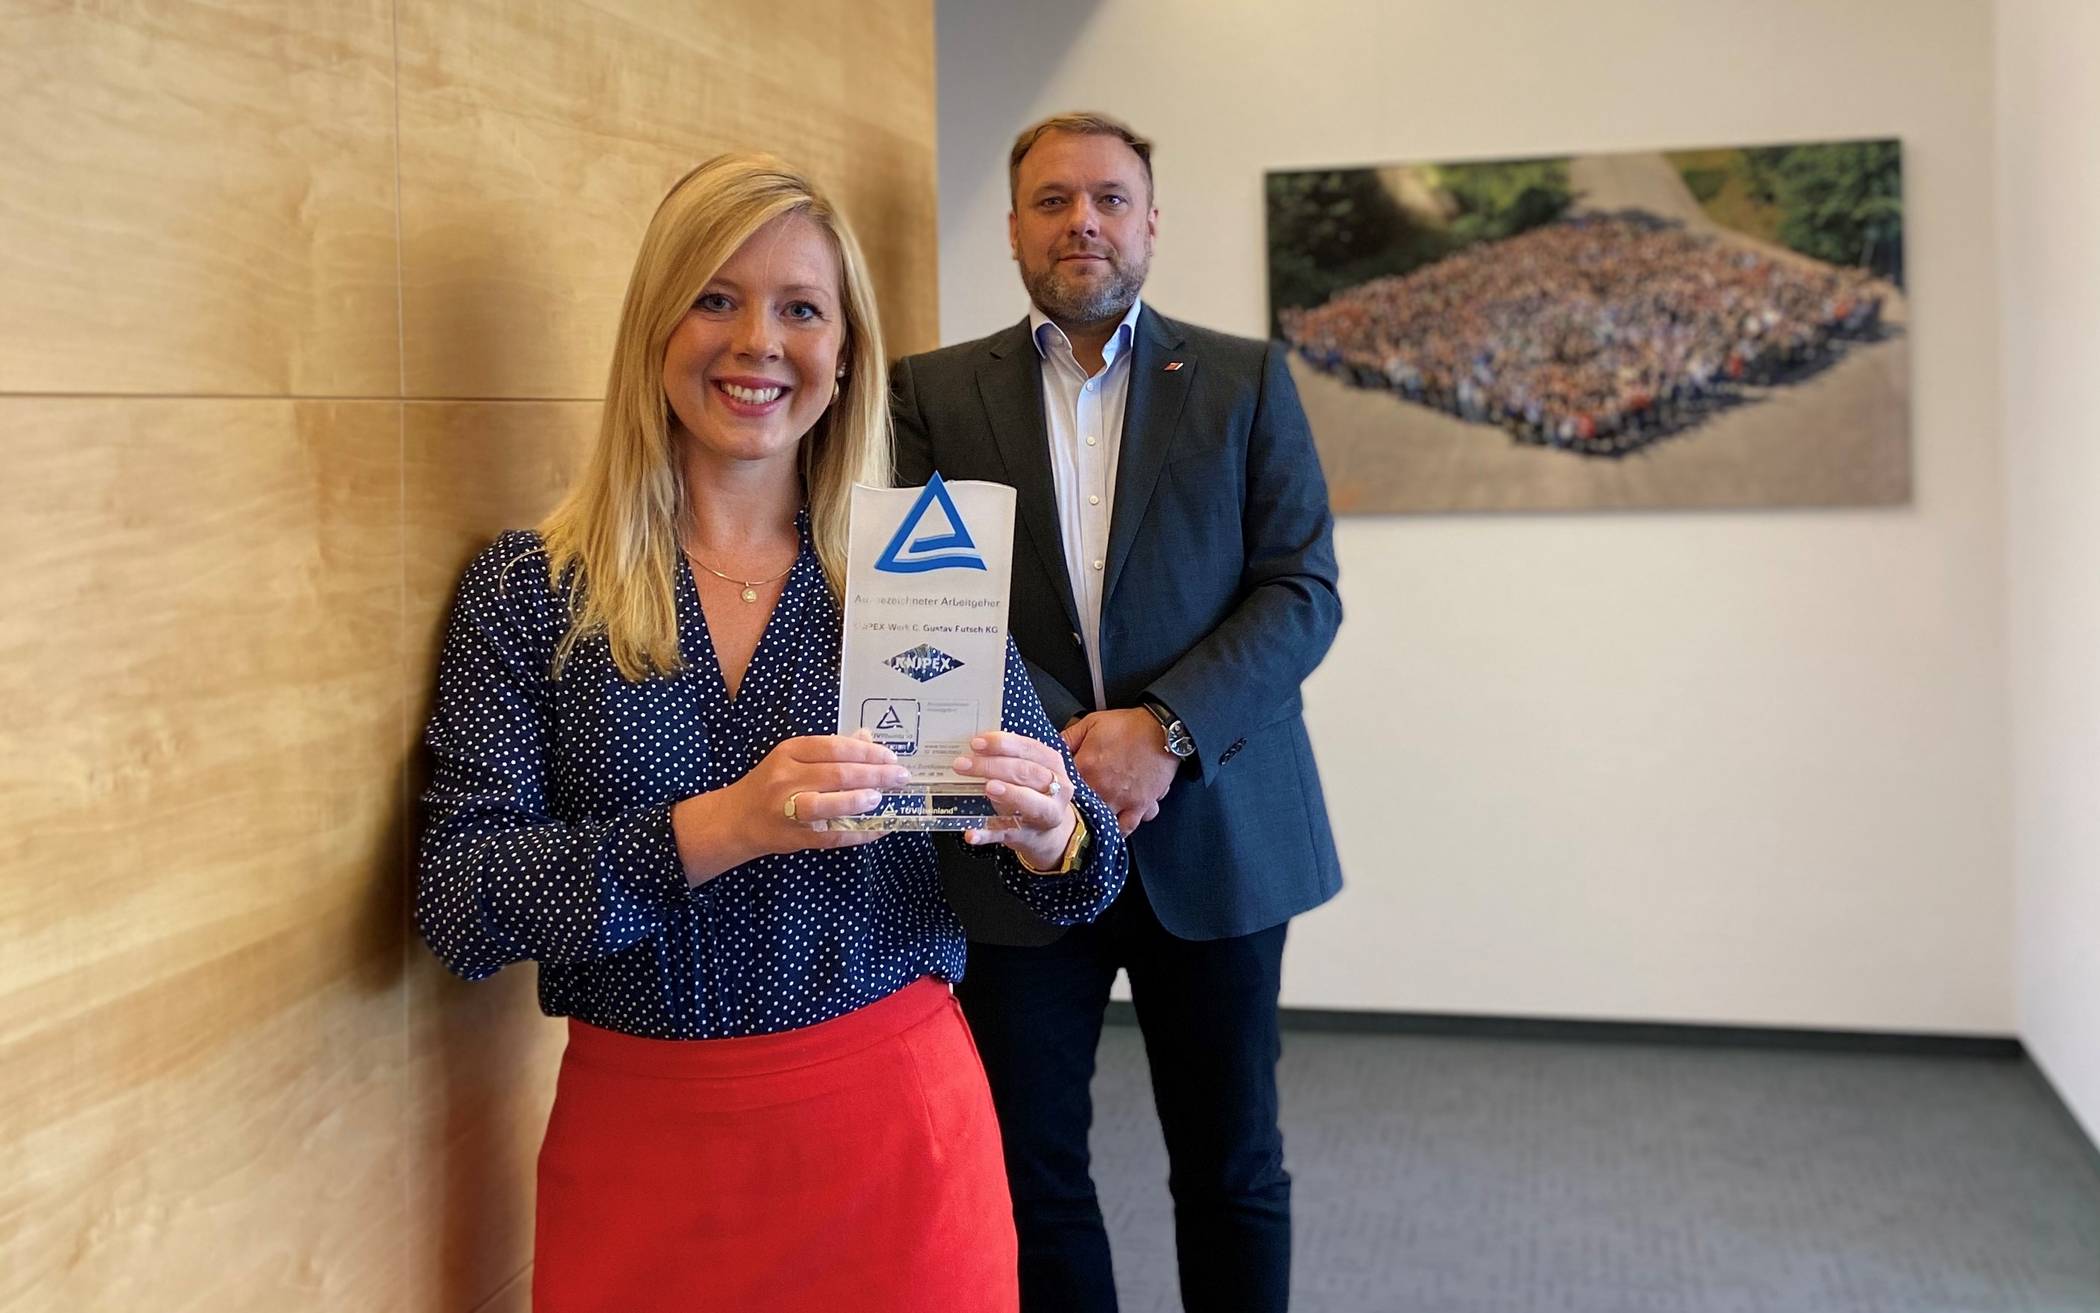  Sonja Clemens und Kai Wiedemann  halten stolz den „Pokal“ der erfolgreichen Re-Zertifizierung zum „Ausgezeichneter Arbeitgeber + Ausbildungsbetrieb“in den Händen.  